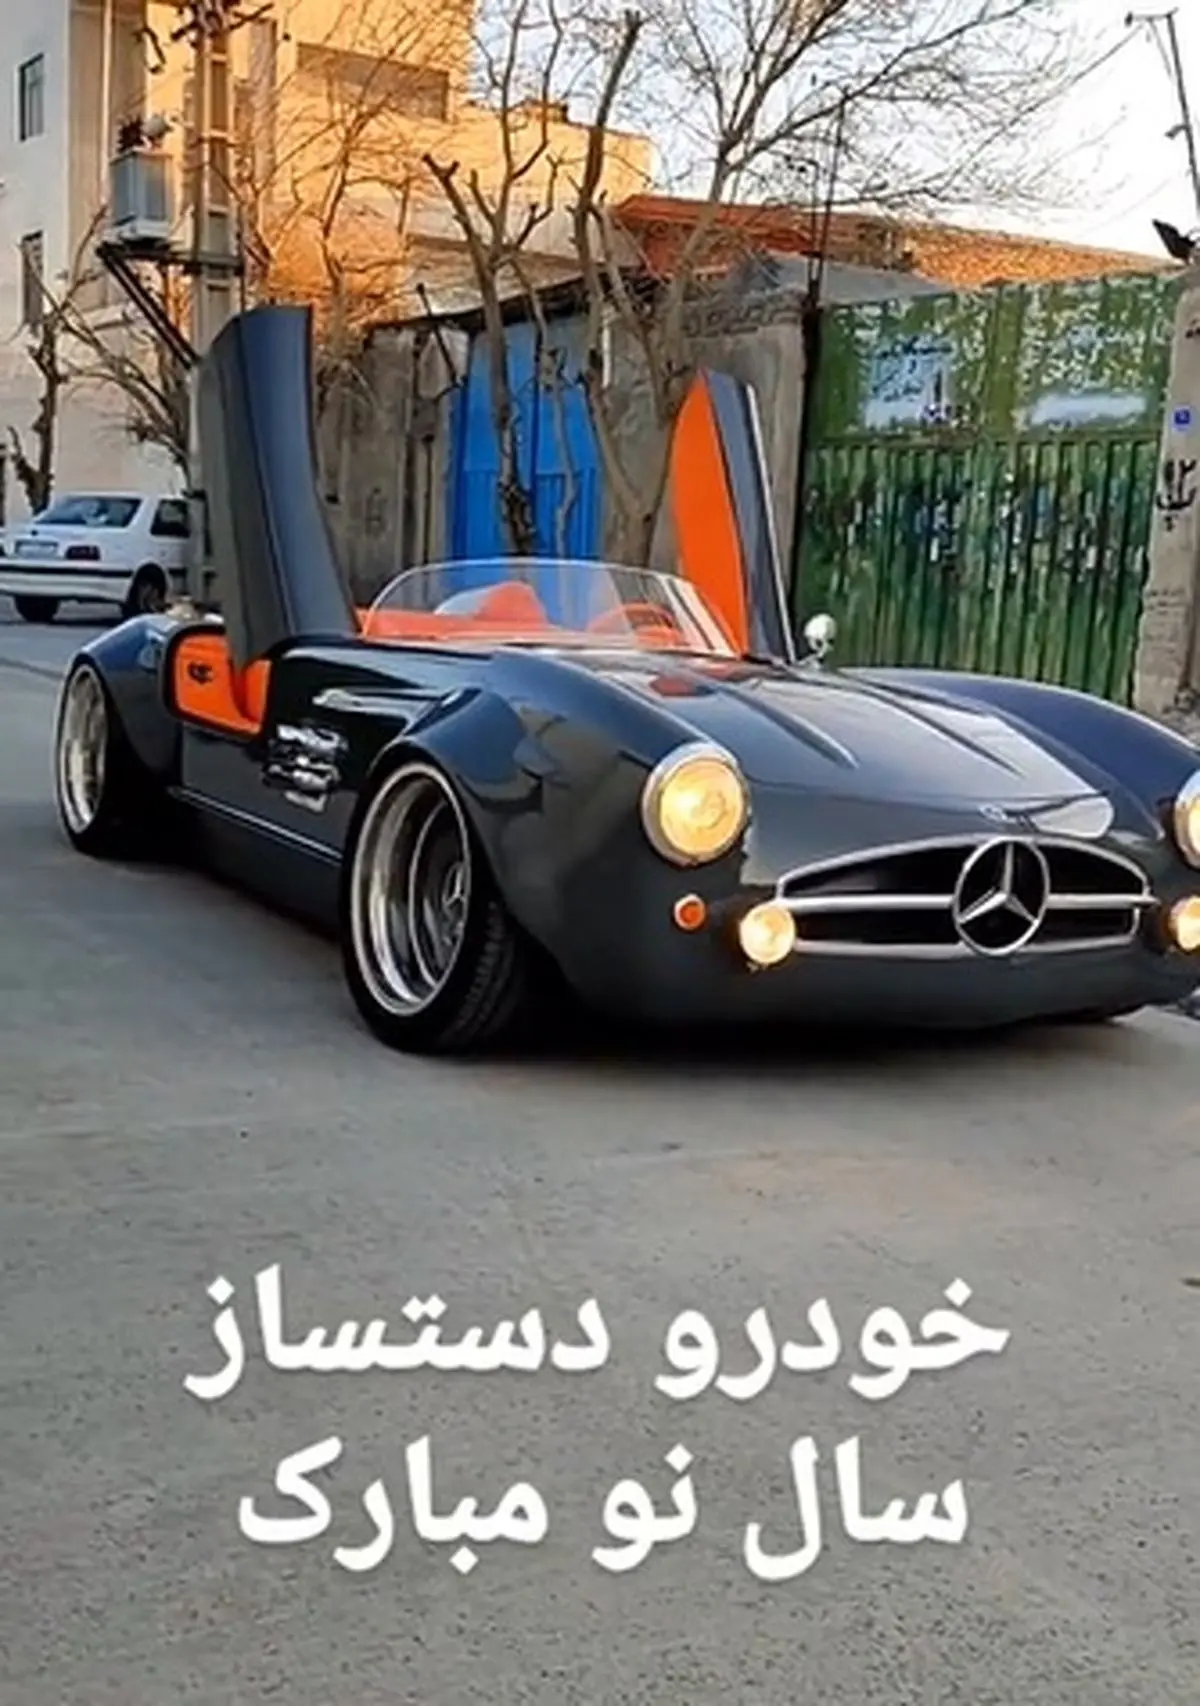 شاهکار جوان ایرانی در تولید یک خودروی لوکس + فیلم